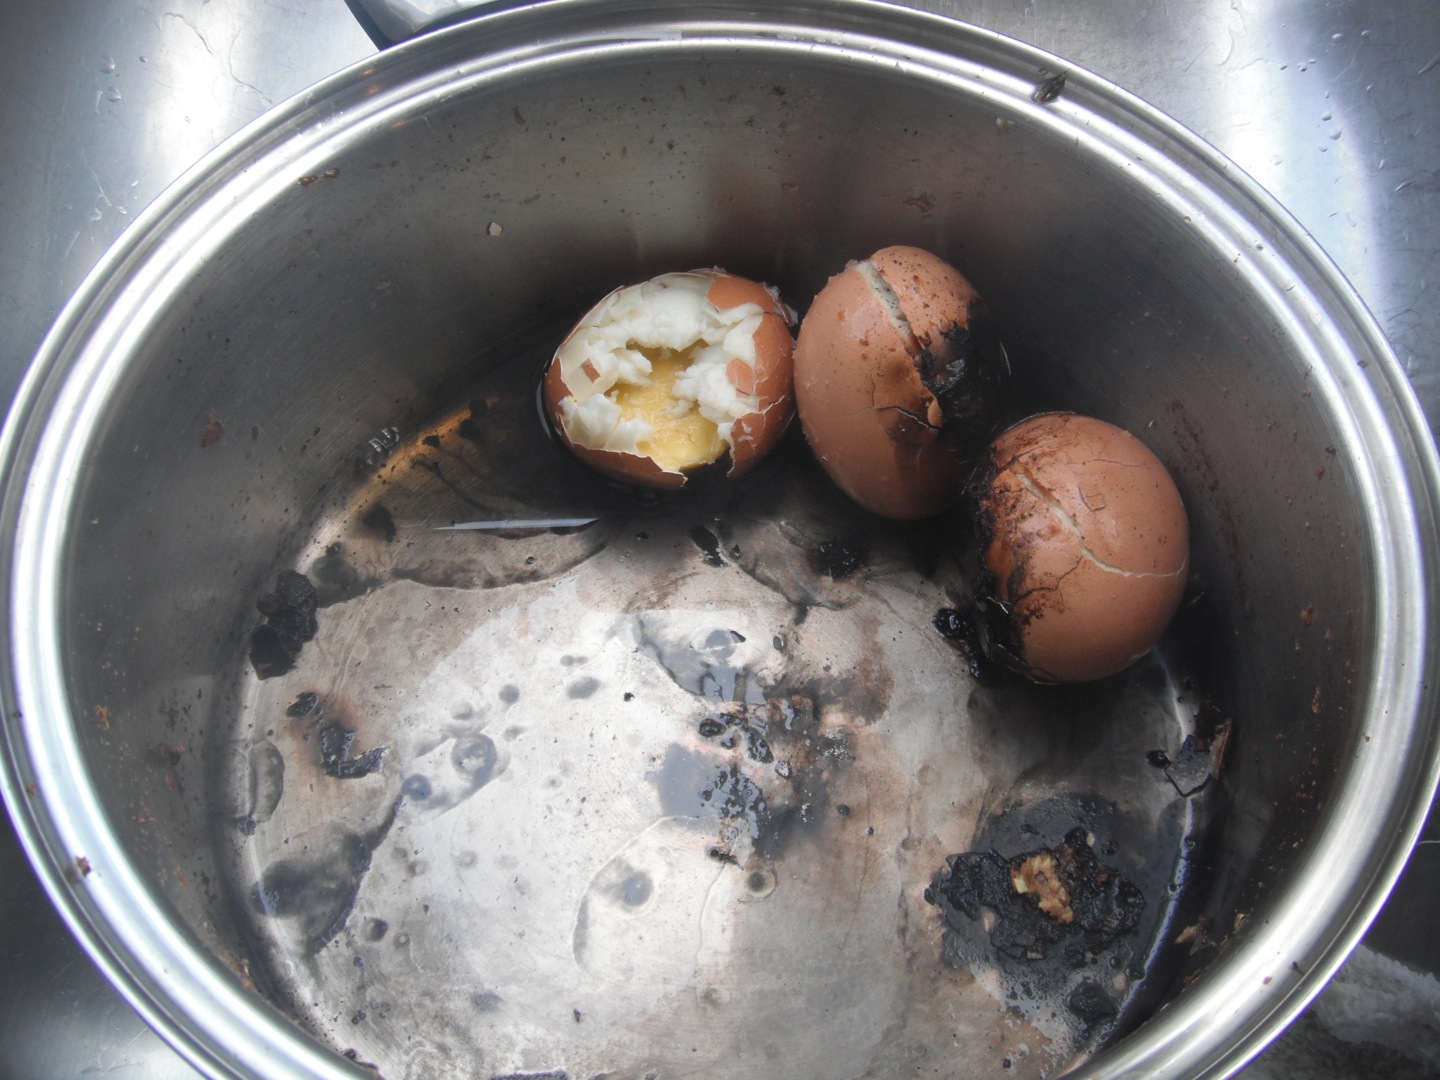 Видео вареные яички. Взорвалось яйцо при варке. Яйца в луковой шелухе.